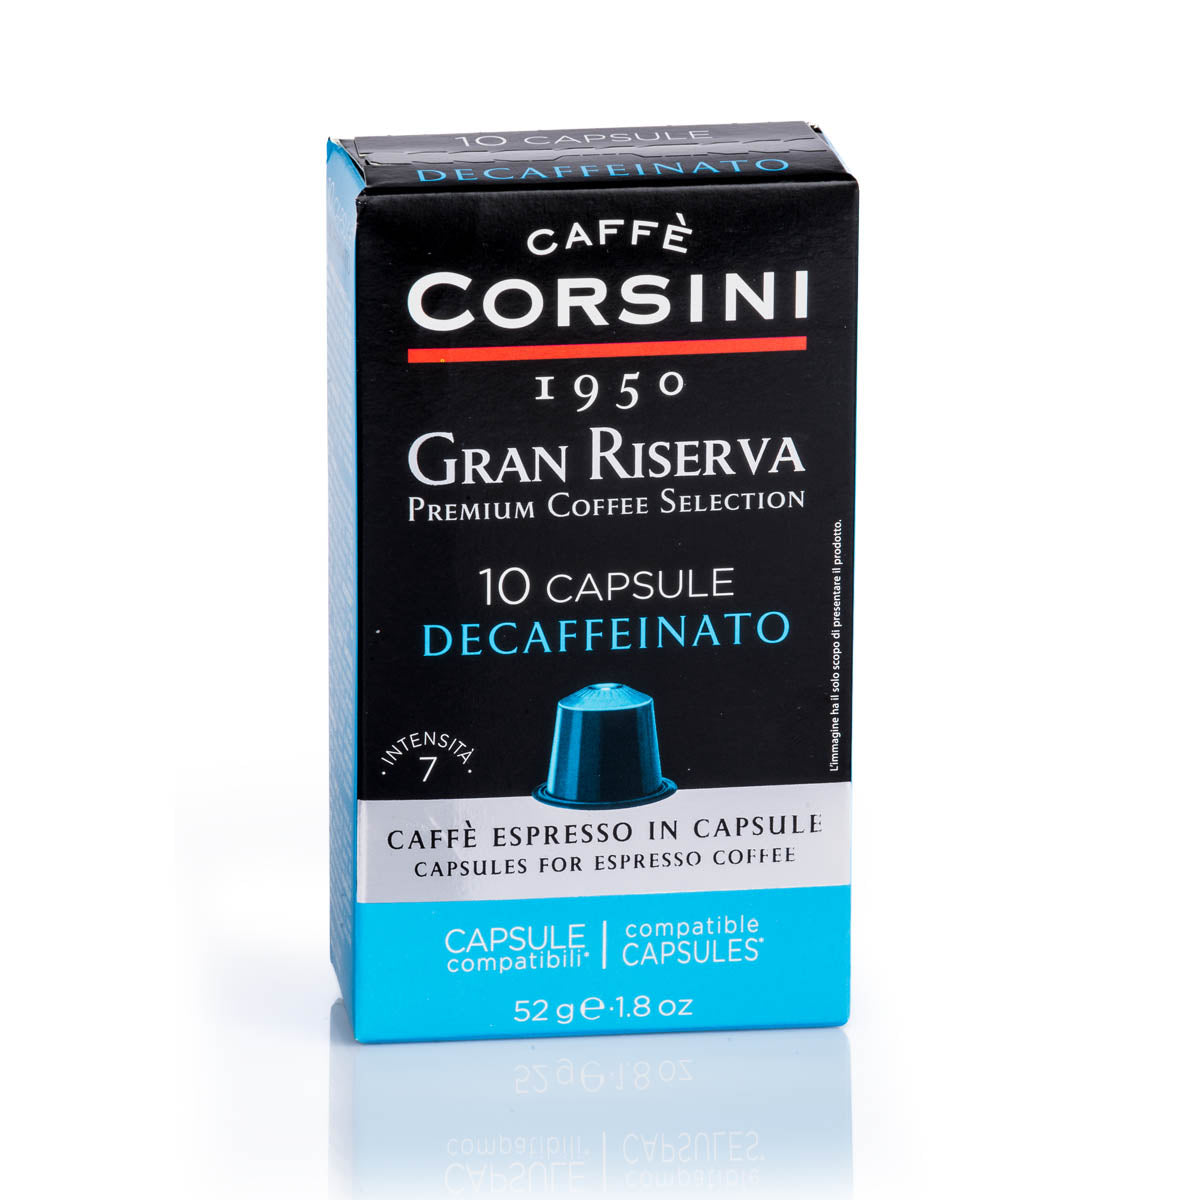 10 capsule di caffè compatibili Nespresso® per confezione | Gran Riserva Decaffeinato | Cartone con 6 confezioni